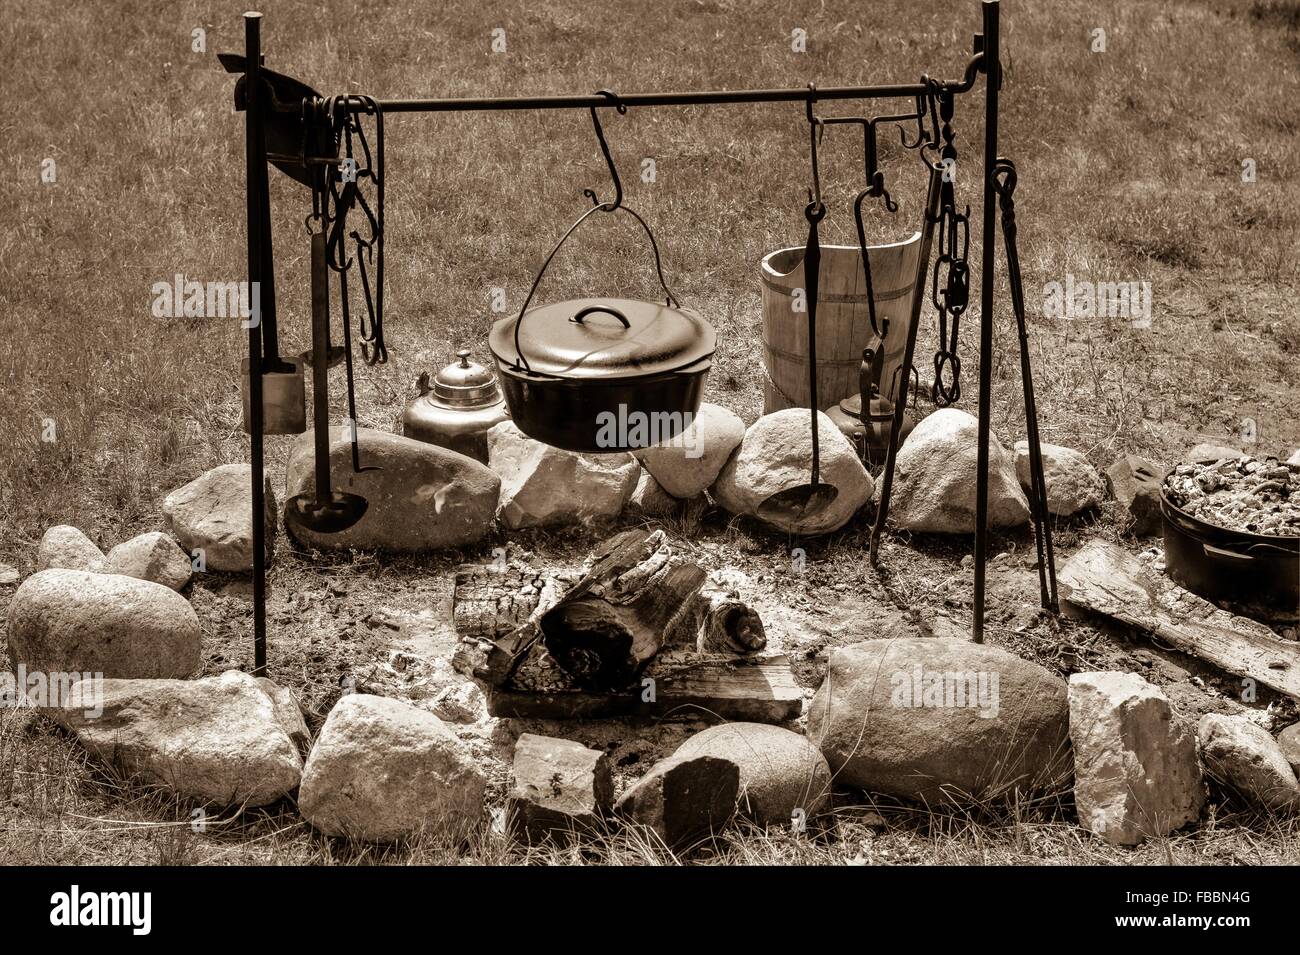 La cuisine de camp. Chaudron sur un feu de camp avec pioneer d'ustensiles de cuisine en noir et blanc. Banque D'Images